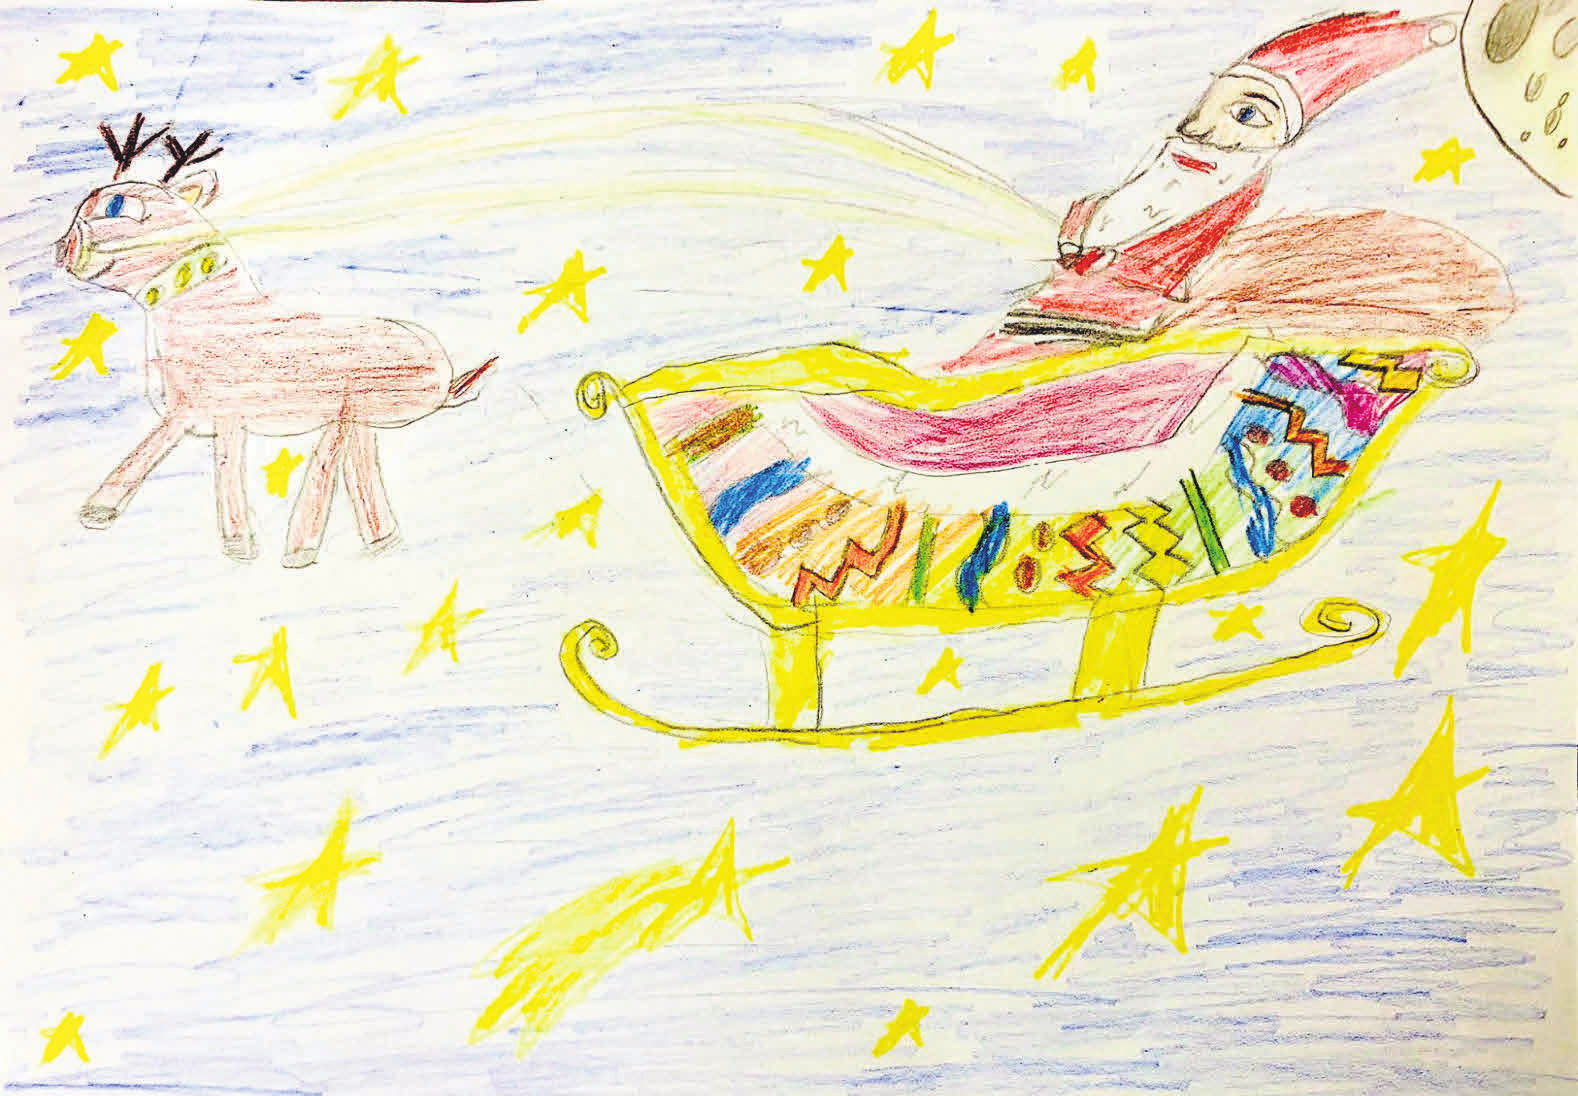 Eine Einsendung von Konstantin Jugan: Der Weihnachtsmann fliegt in der Weihnachtsnacht in seinem Schlitten mit dem Rentier die Geschenke verteilen. (Julietta, 8 Jahre)